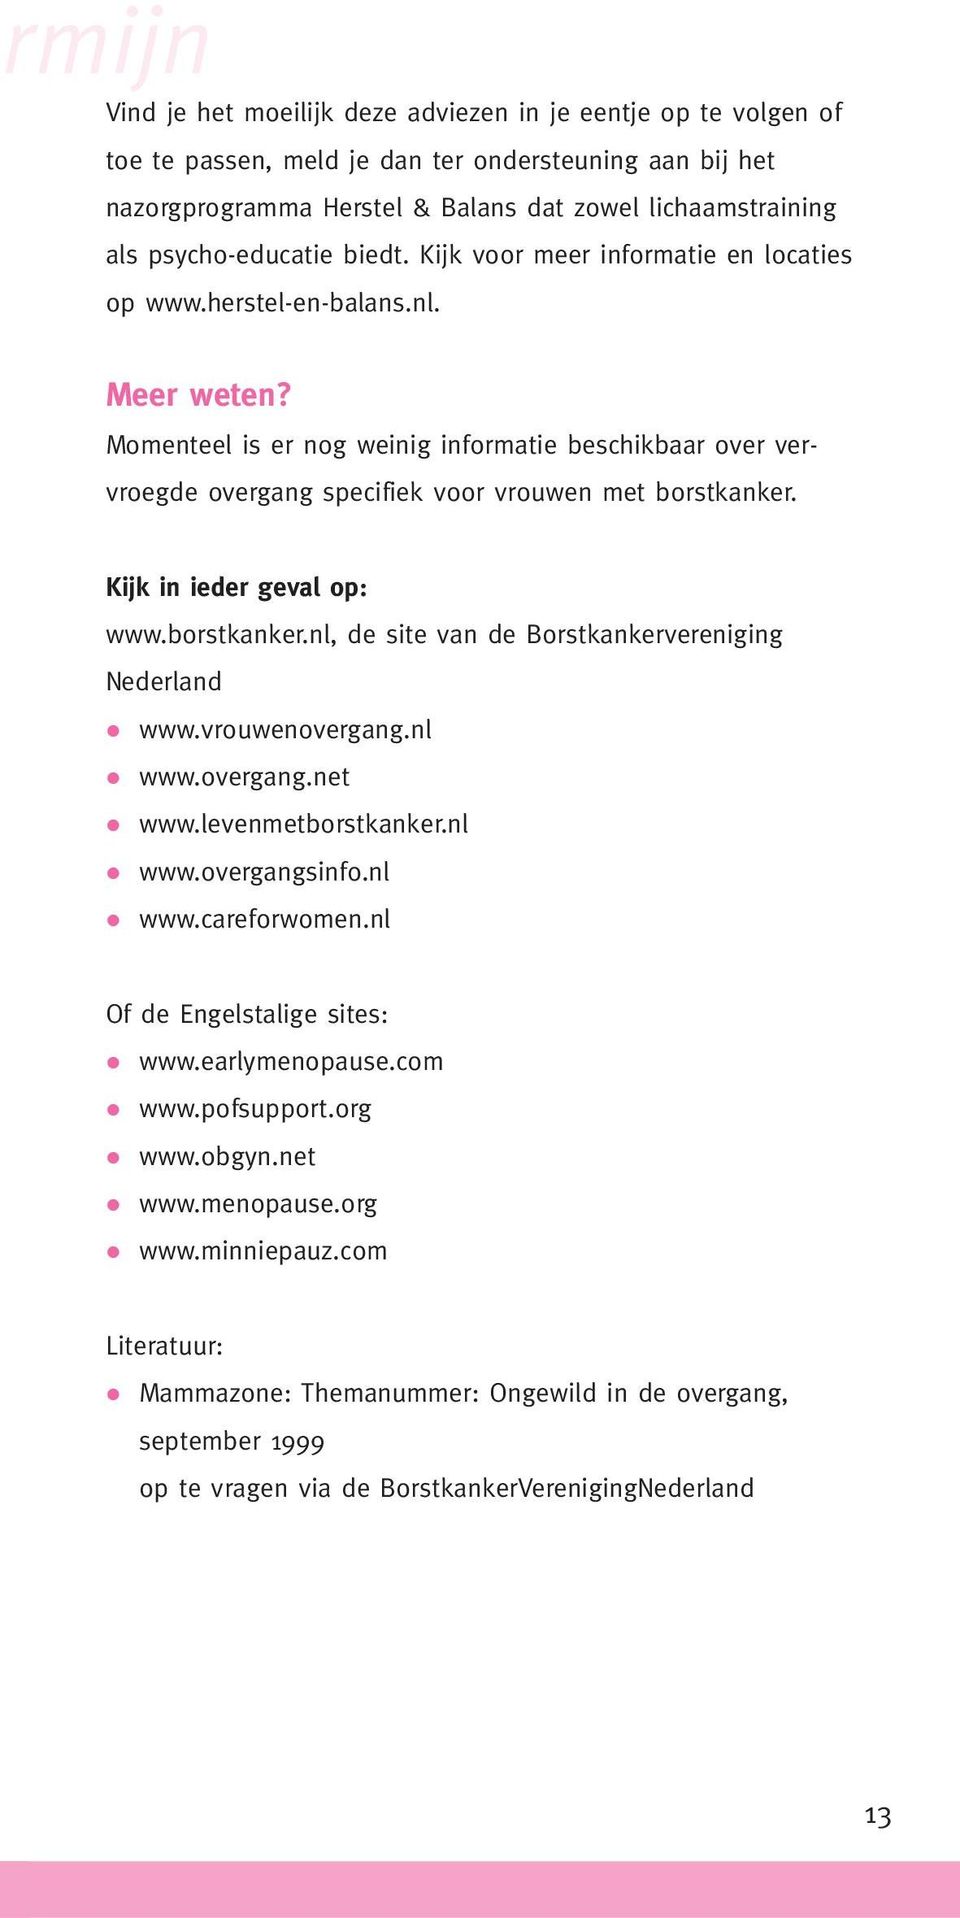 Momenteel is er nog weinig informatie beschikbaar over vervroegde overgang specifiek voor vrouwen met borstkanker. Kijk in ieder geval op: www.borstkanker.nl, de site van de Borstkankervereniging Nederland www.